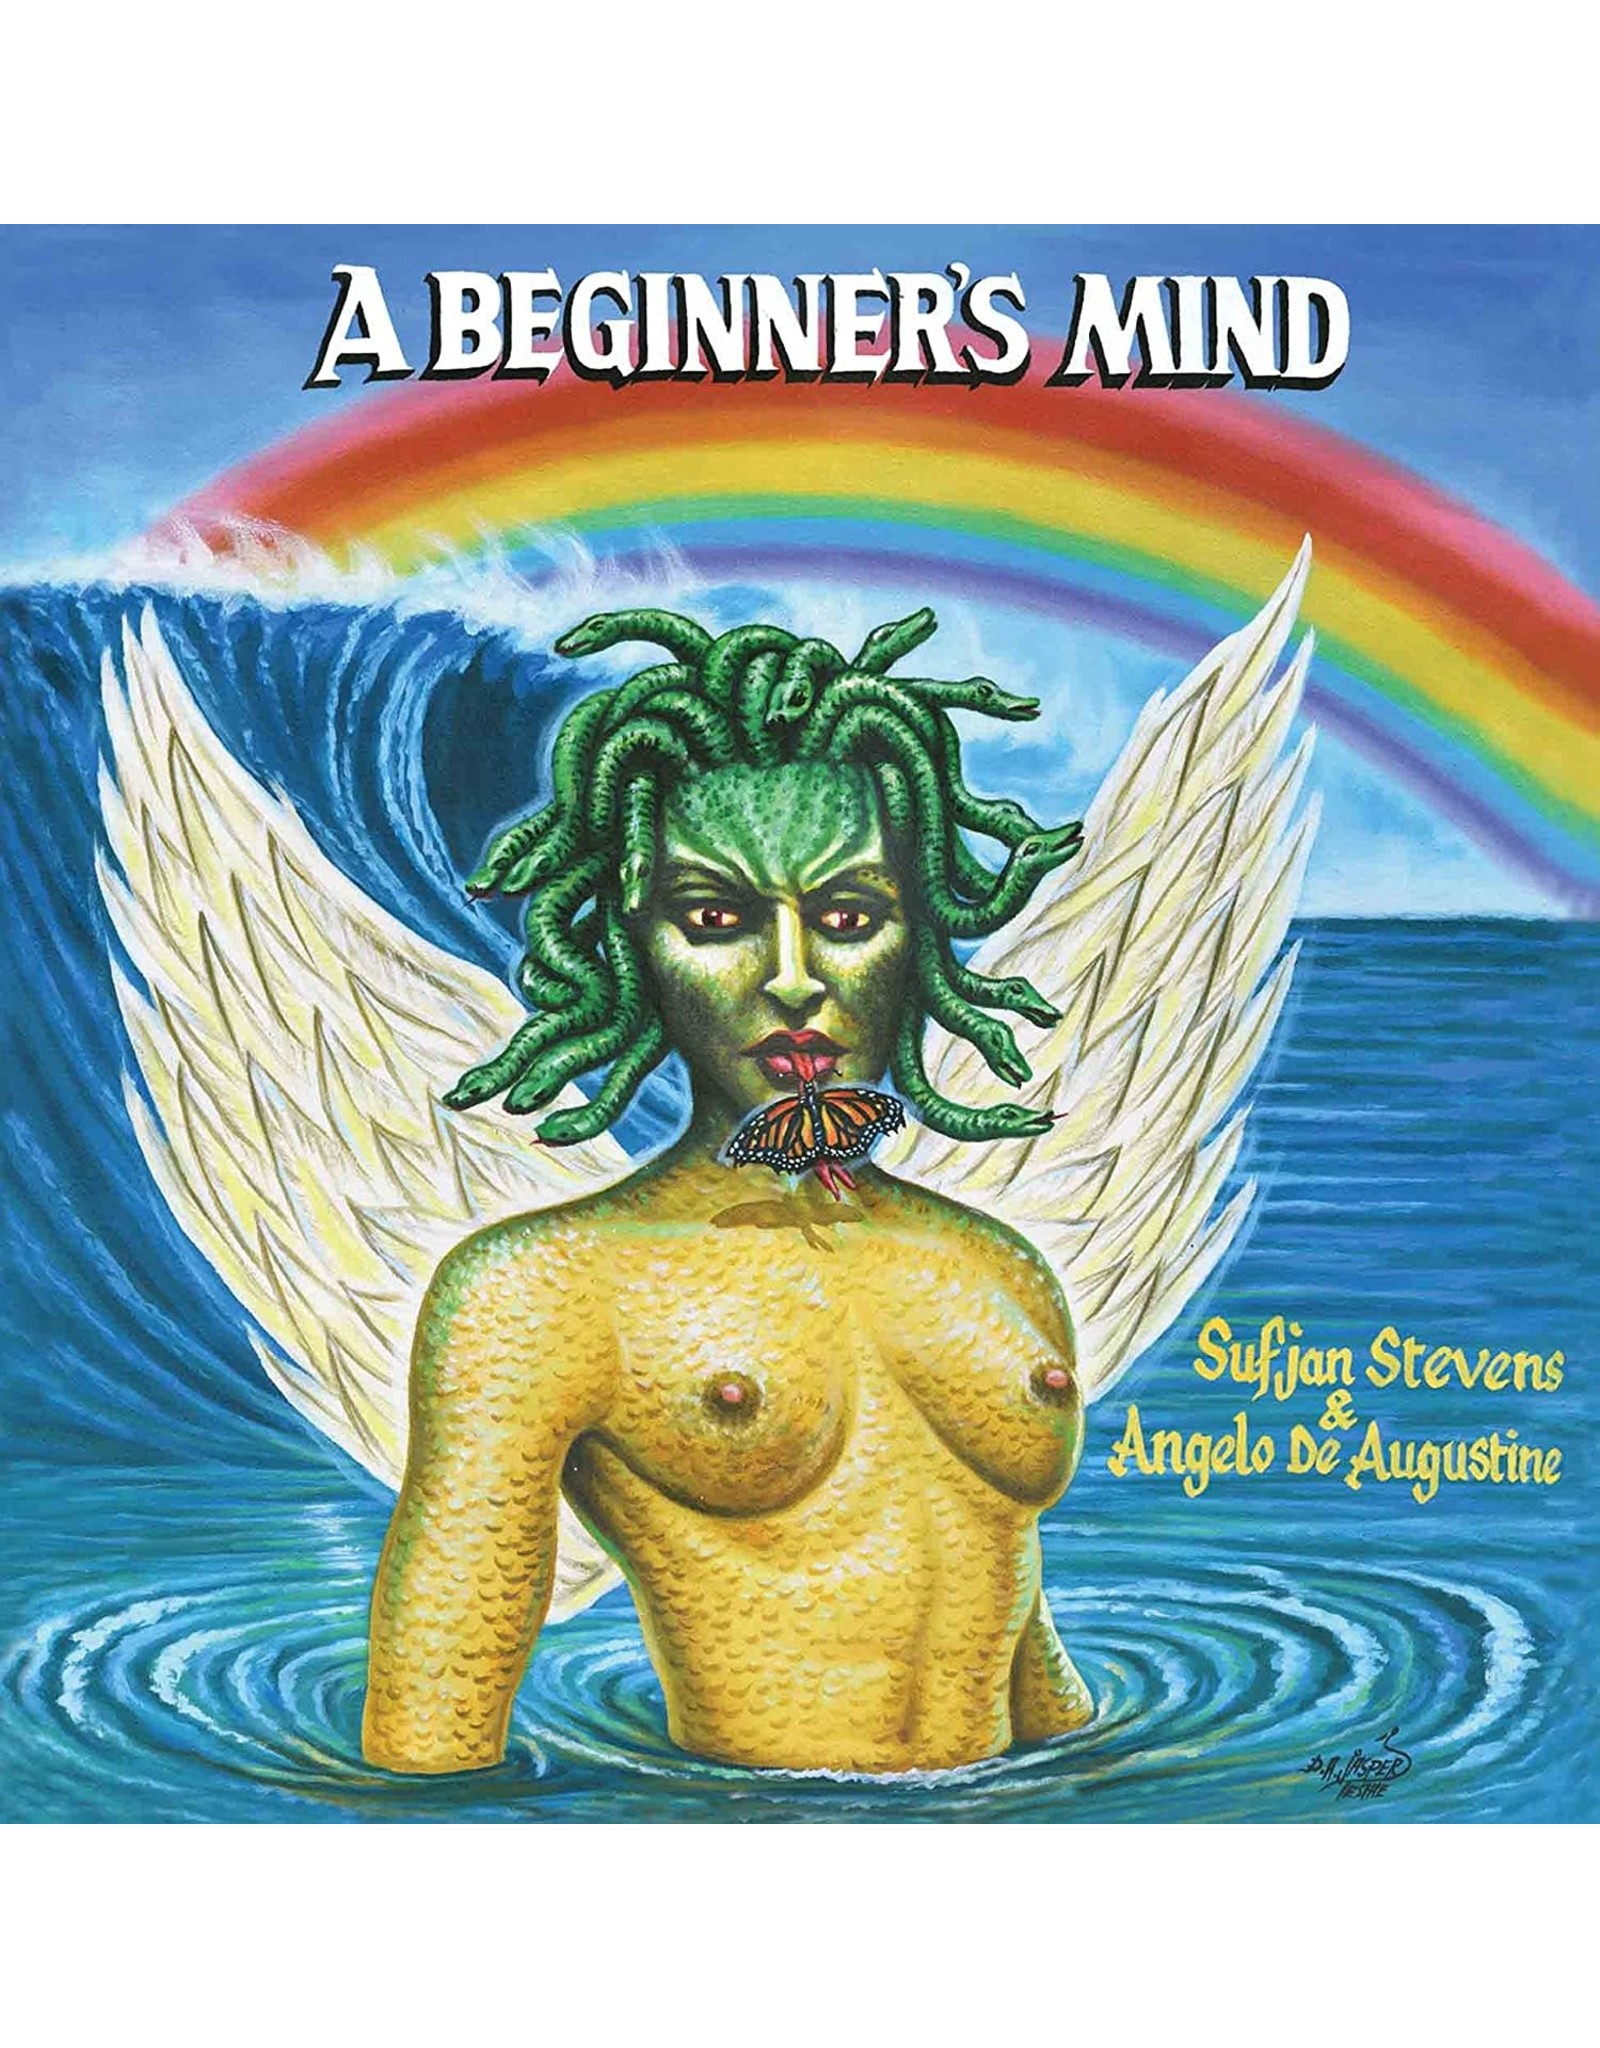 Sufjan Stevens / Angelo De Augustine - A Beginner's Mind (Gold Vinyl)